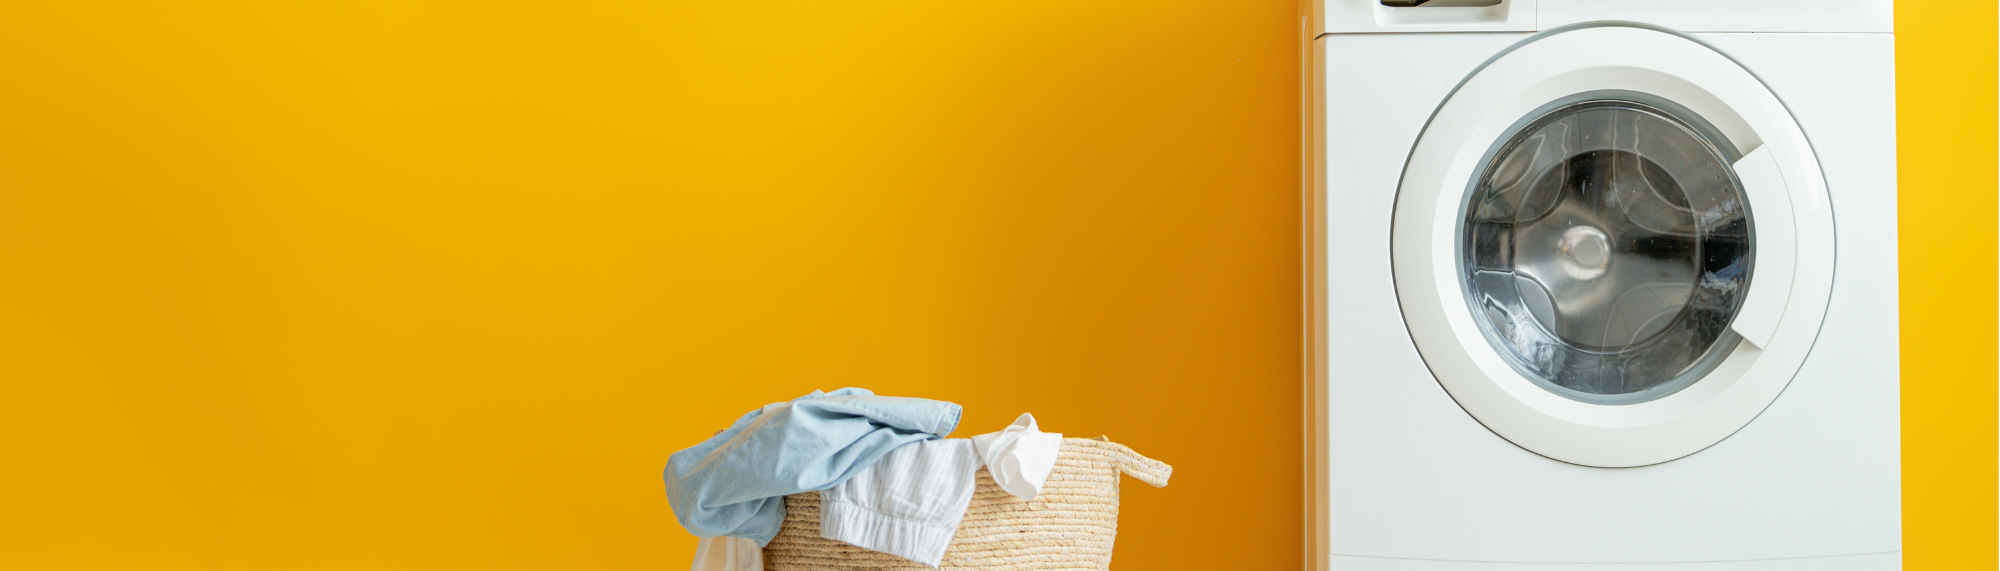 Comment nettoyer efficacement une machine à laver ?